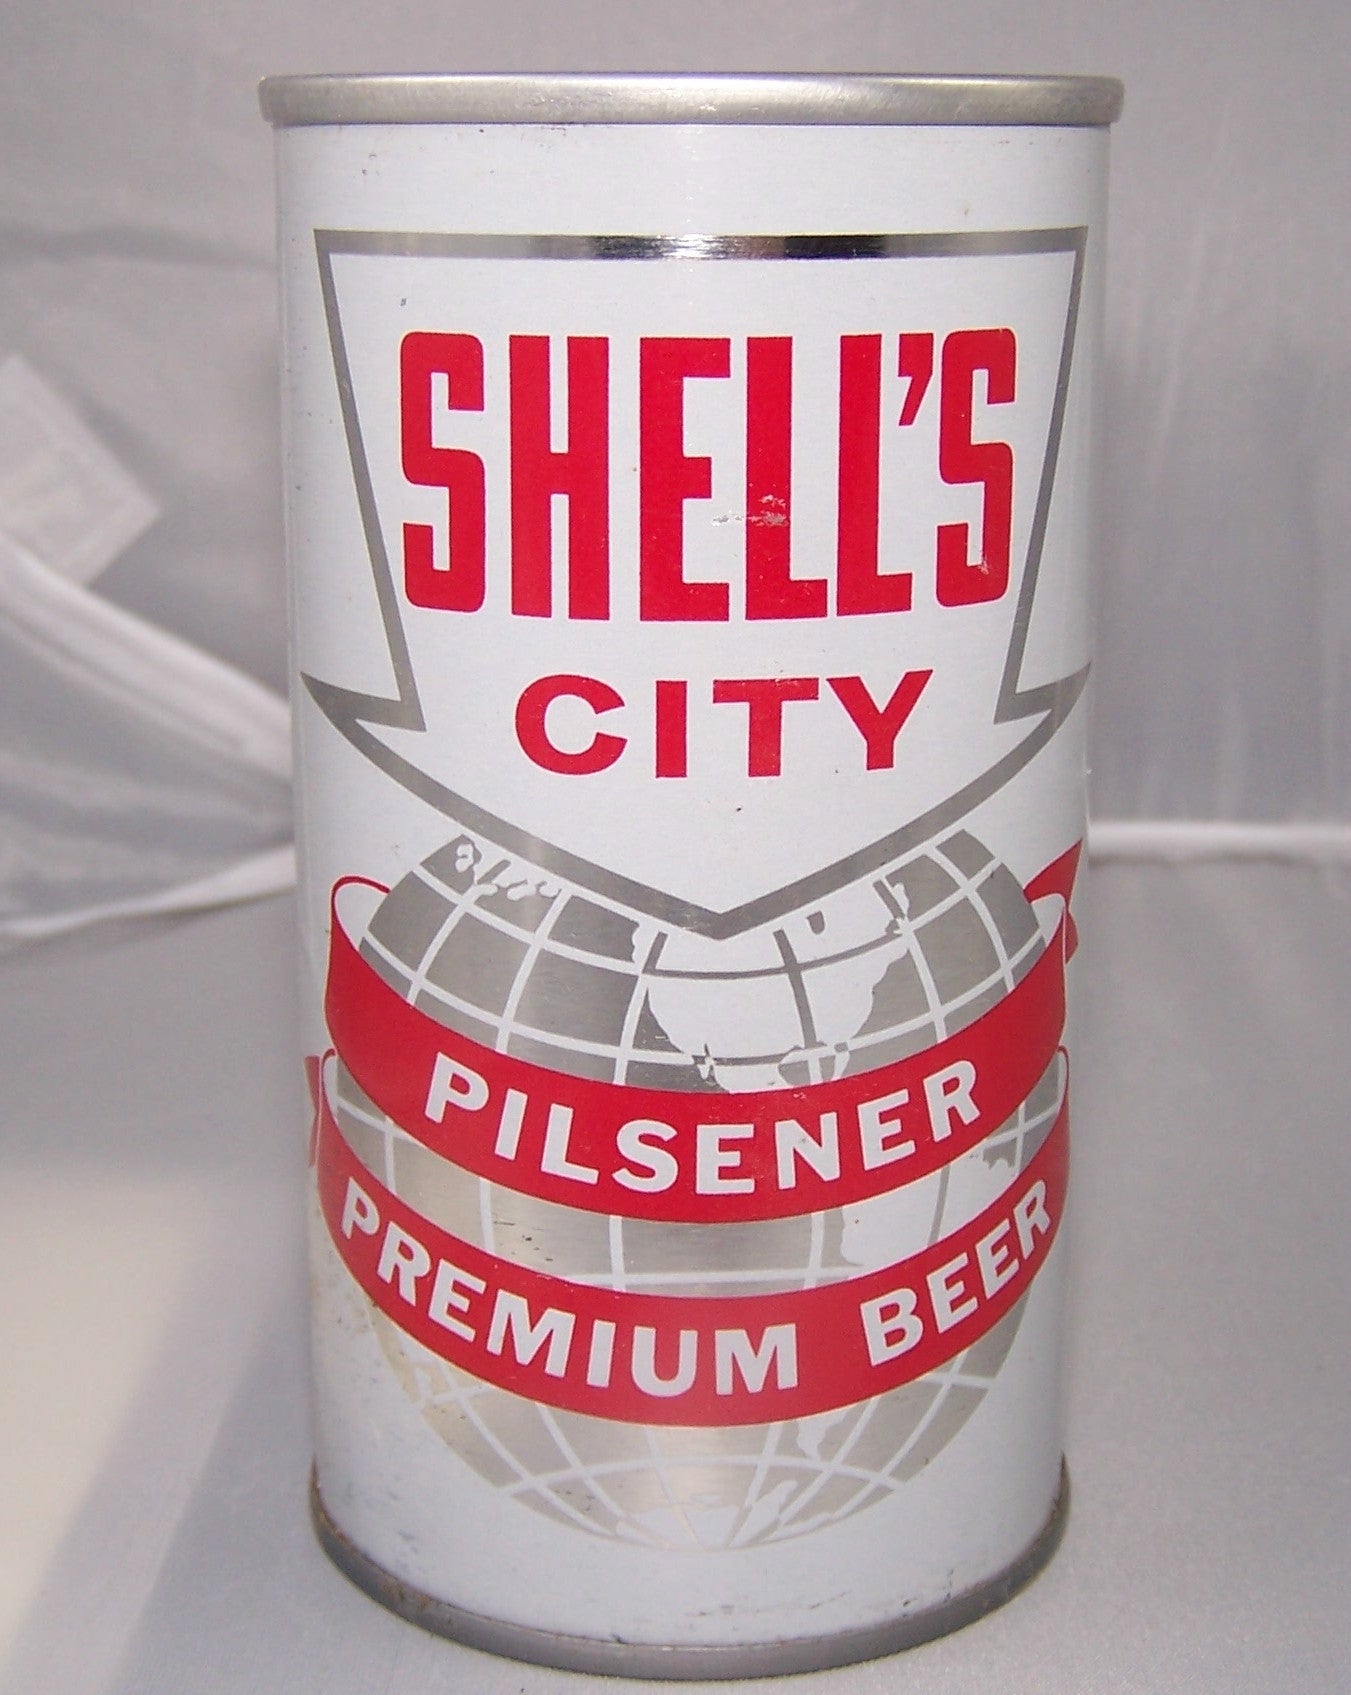 Shell's City Pilsener Premium Beer, USBC II 124-17, Grade 1. Sold